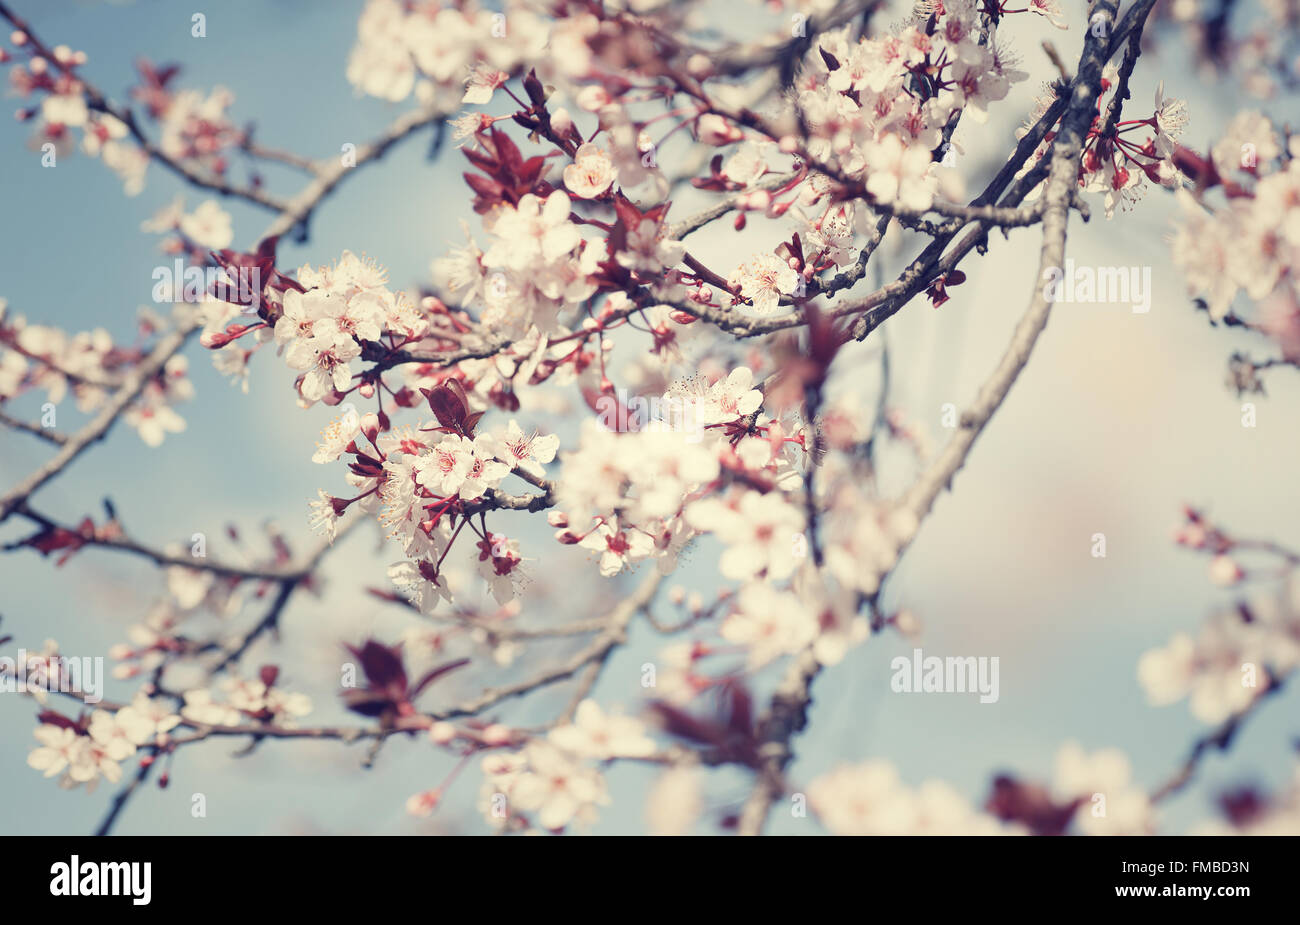 Schönen Kirschbaum Blüte, kleine sanfte weiße Blüten über blauen Himmelshintergrund, Schönheit der Natur Frühling Stockfoto